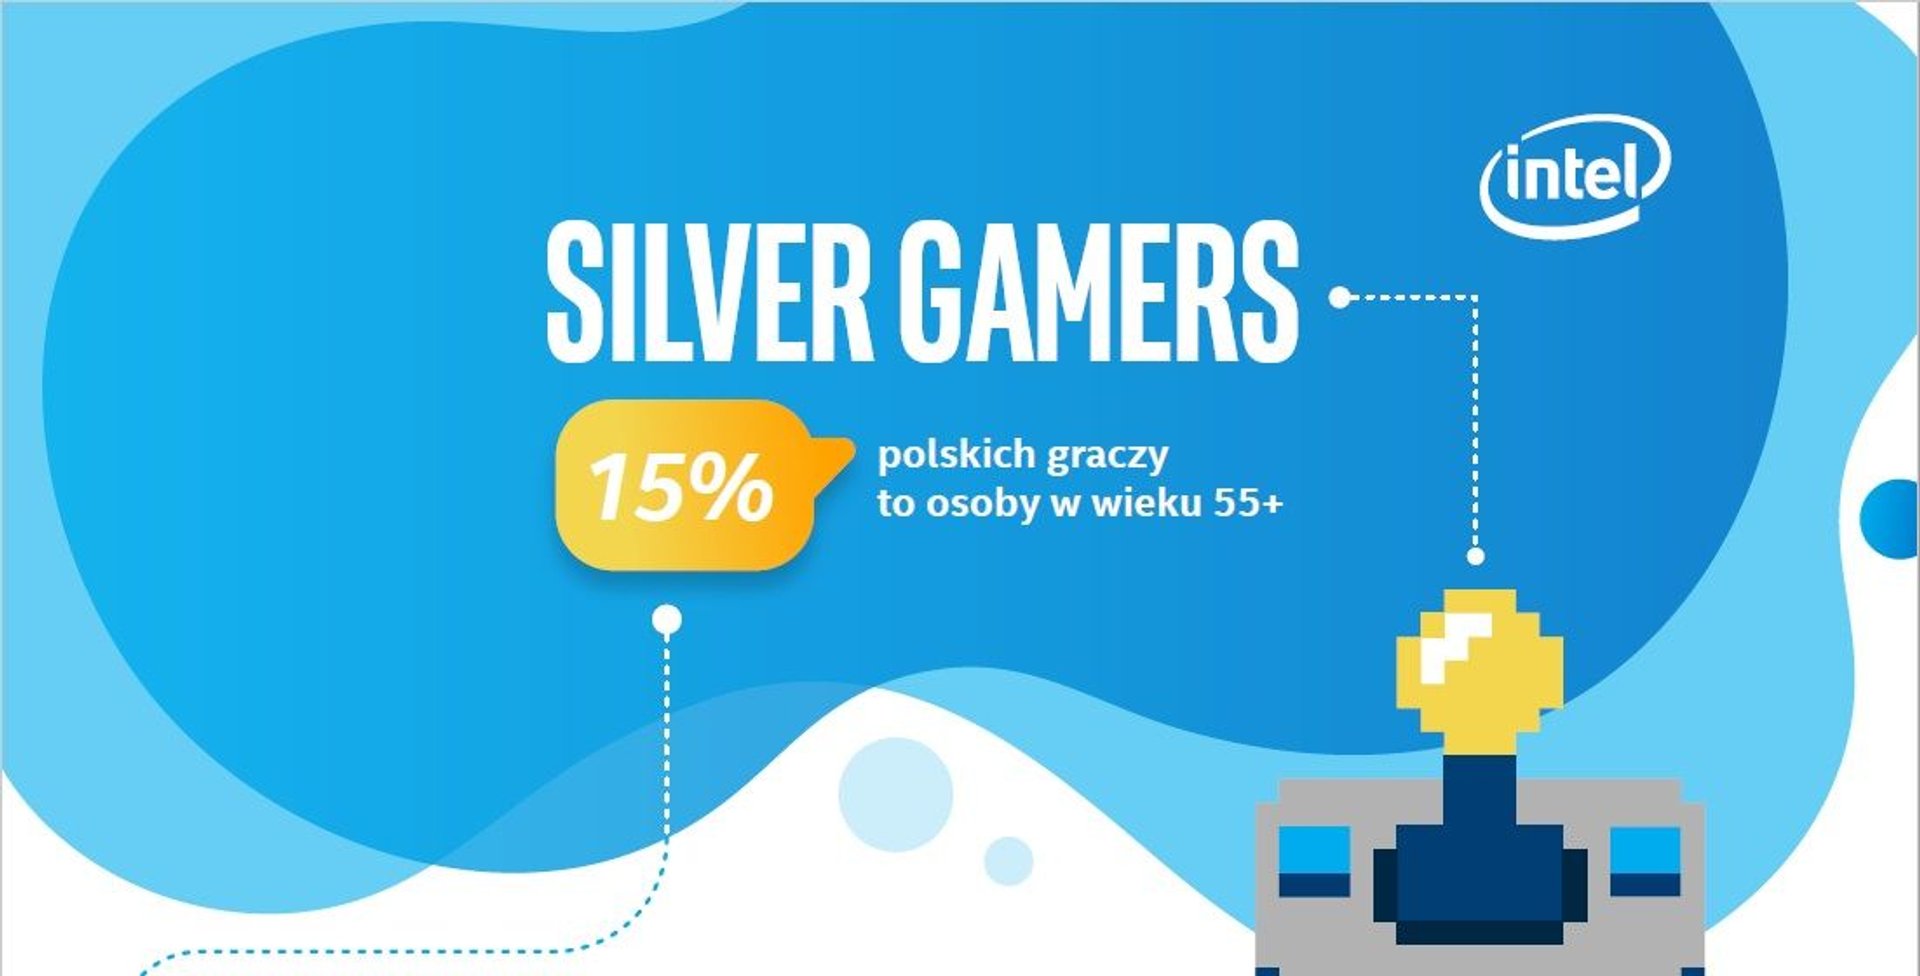 Silver Gaming Intel